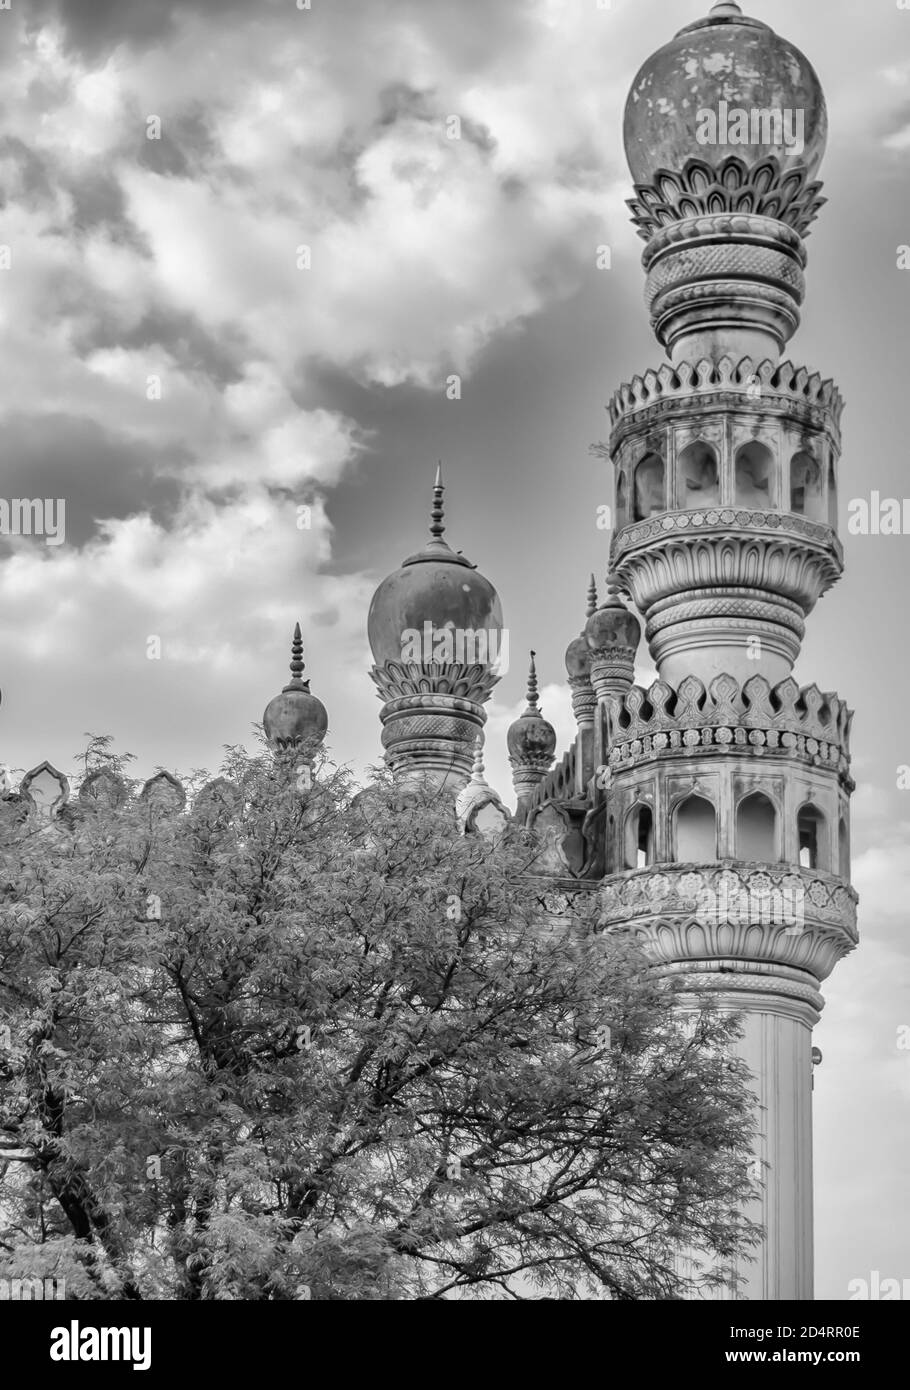 Ein schwarz-weißes Bild von Minaretten der Großen Moschee im Komplex der Qutb Shahi-Gräber in Ibrahim Bagh in Hyderabad, Indien. Stockfoto